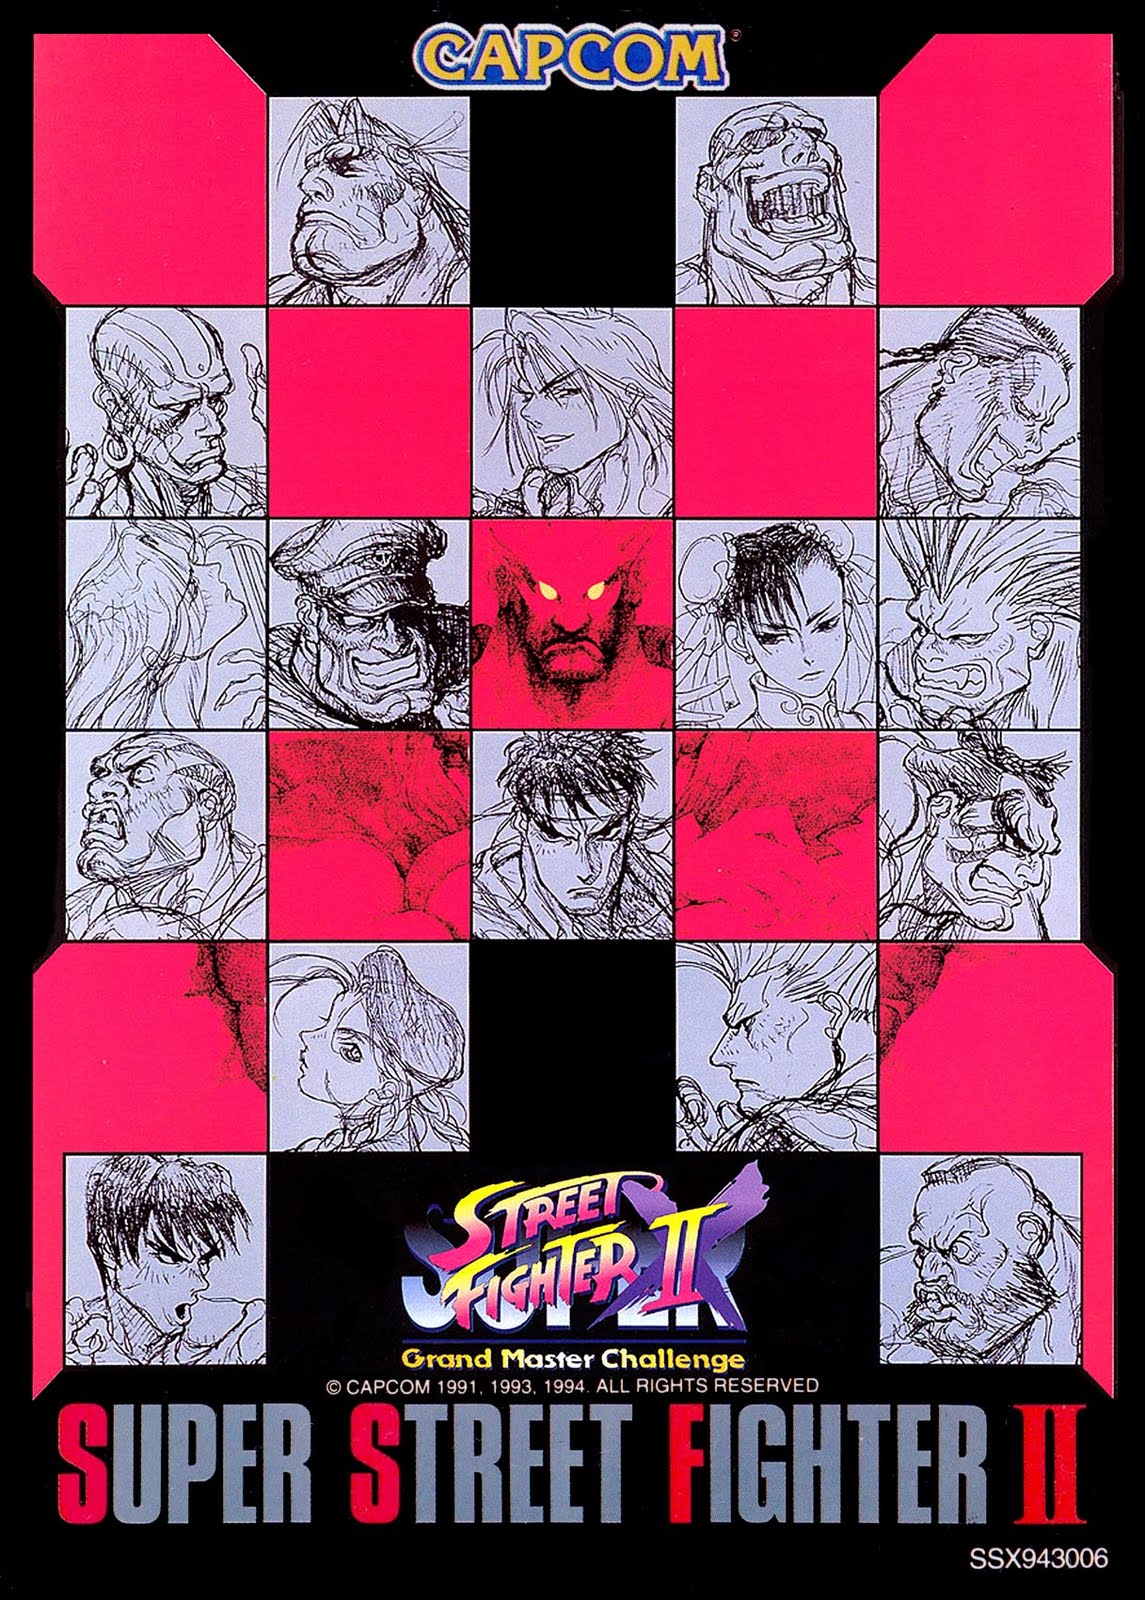 Street Fighter 6/Zangief - SuperCombo Wiki